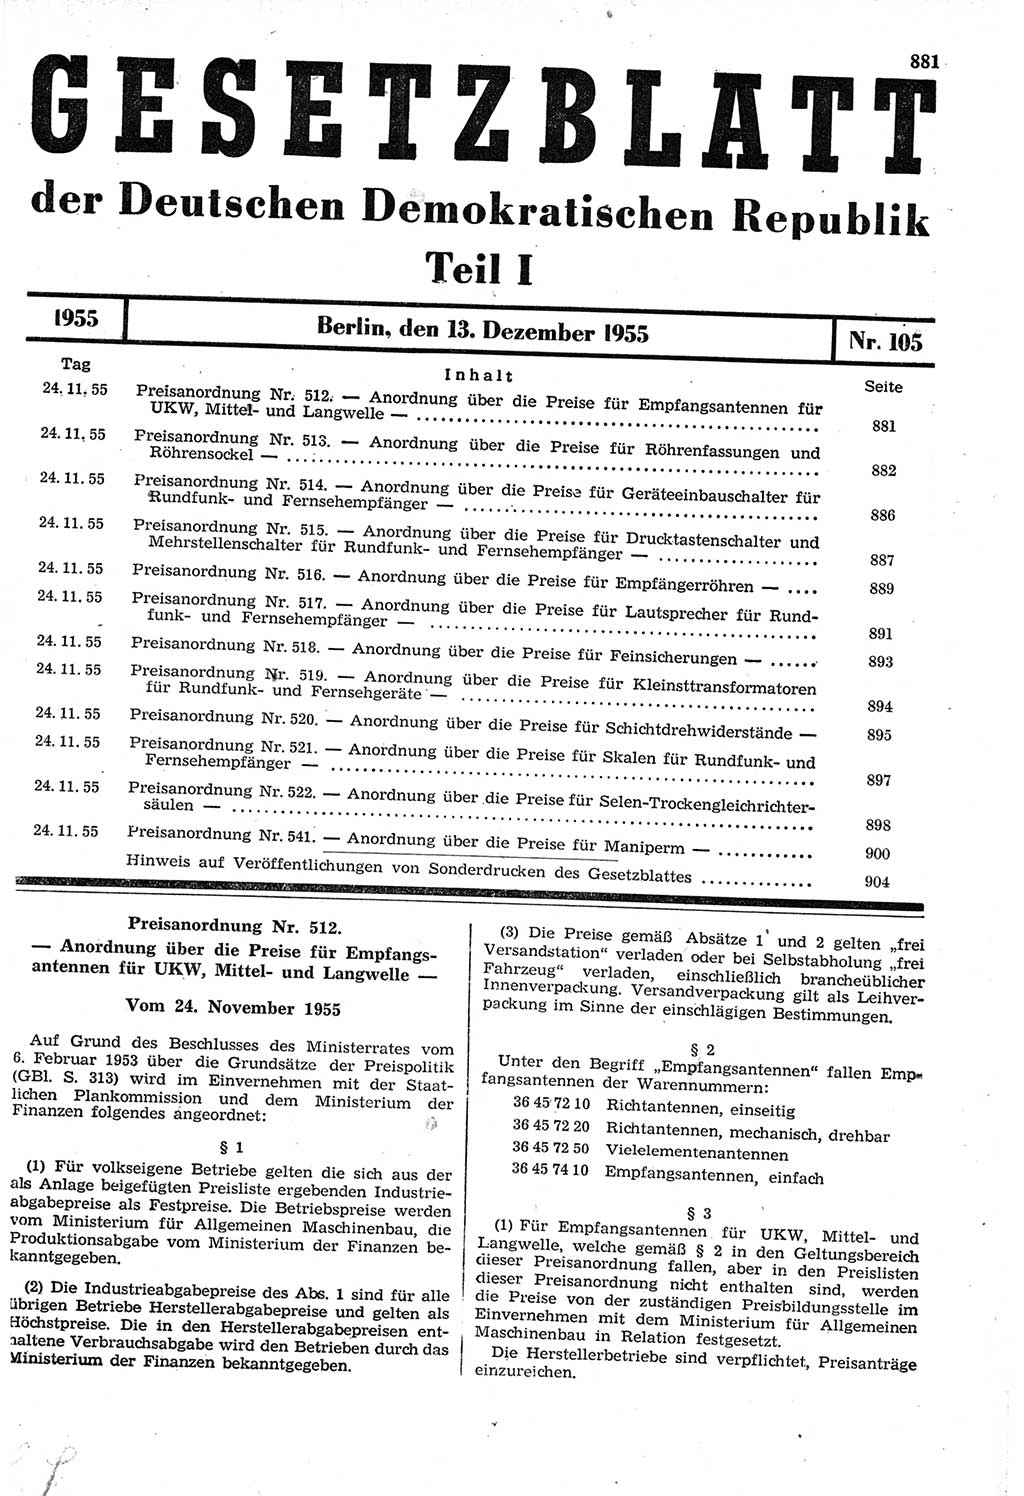 Gesetzblatt (GBl.) der Deutschen Demokratischen Republik (DDR) Teil Ⅰ 1955, Seite 881 (GBl. DDR Ⅰ 1955, S. 881)